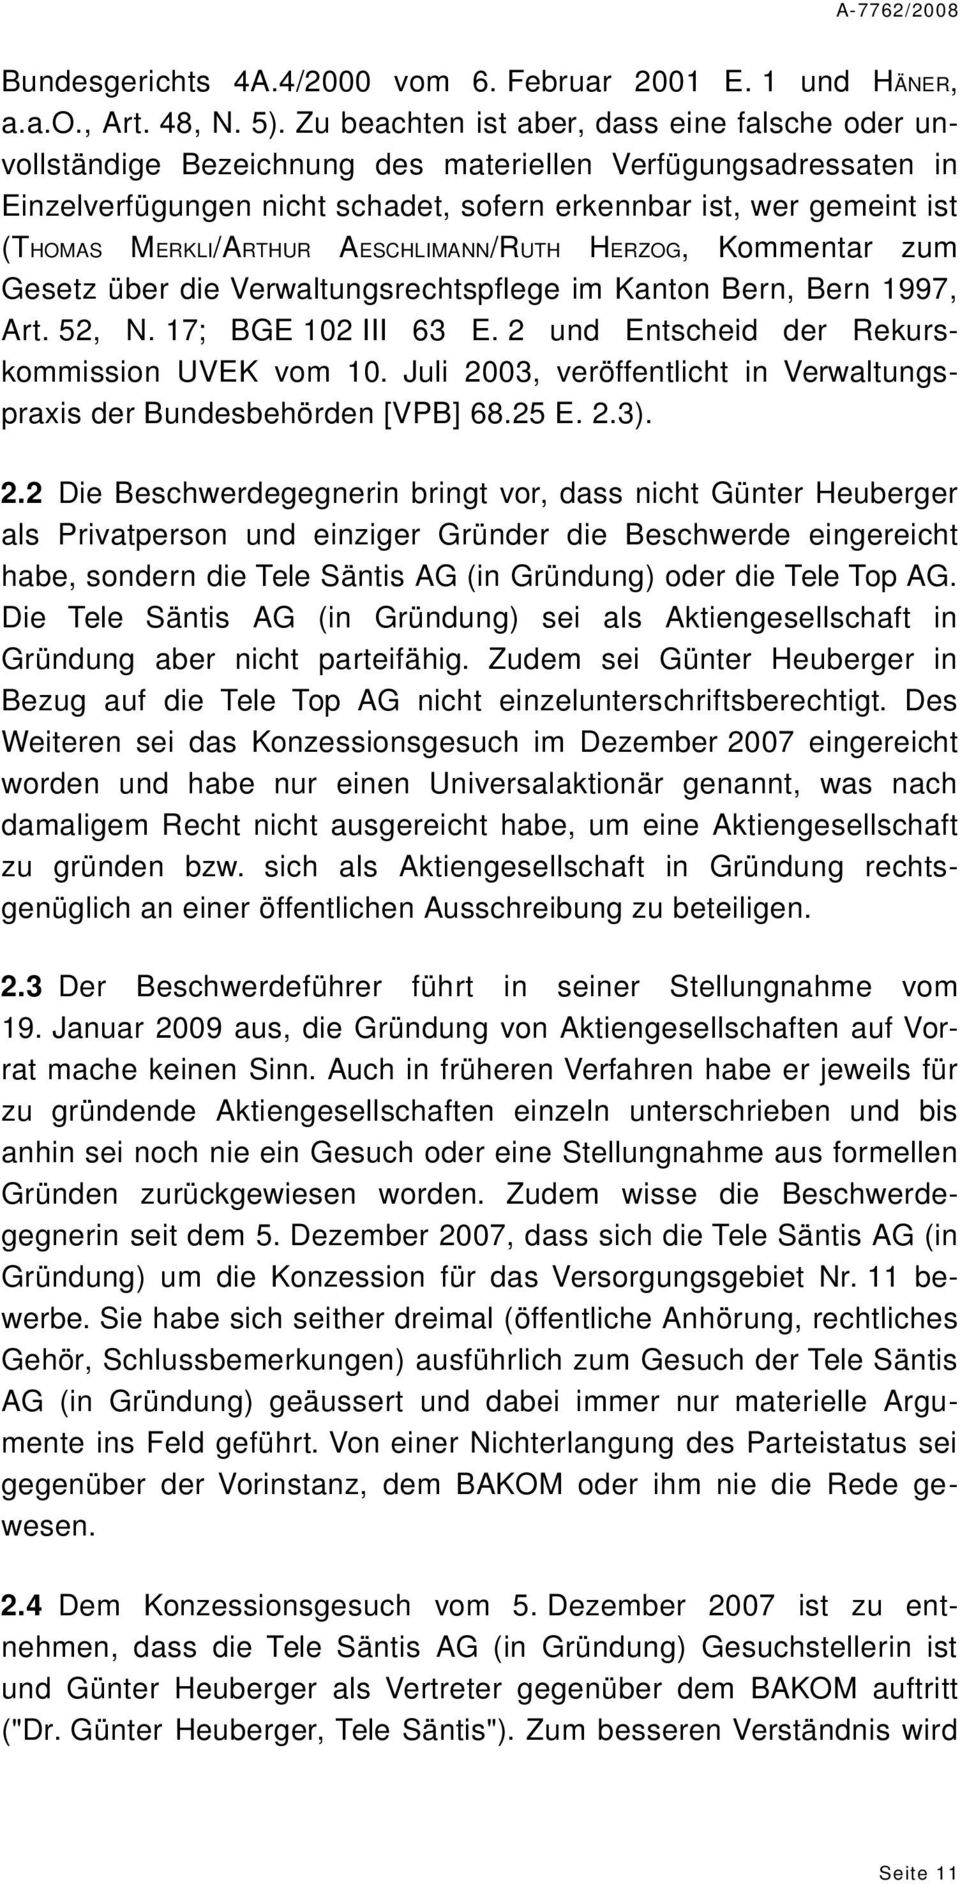 MERKLI/ARTHUR AESCHLIMANN/RUTH HERZOG, Kommentar zum Gesetz über die Verwaltungsrechtspflege im Kanton Bern, Bern 1997, Art. 52, N. 17; BGE 102 III 63 E.